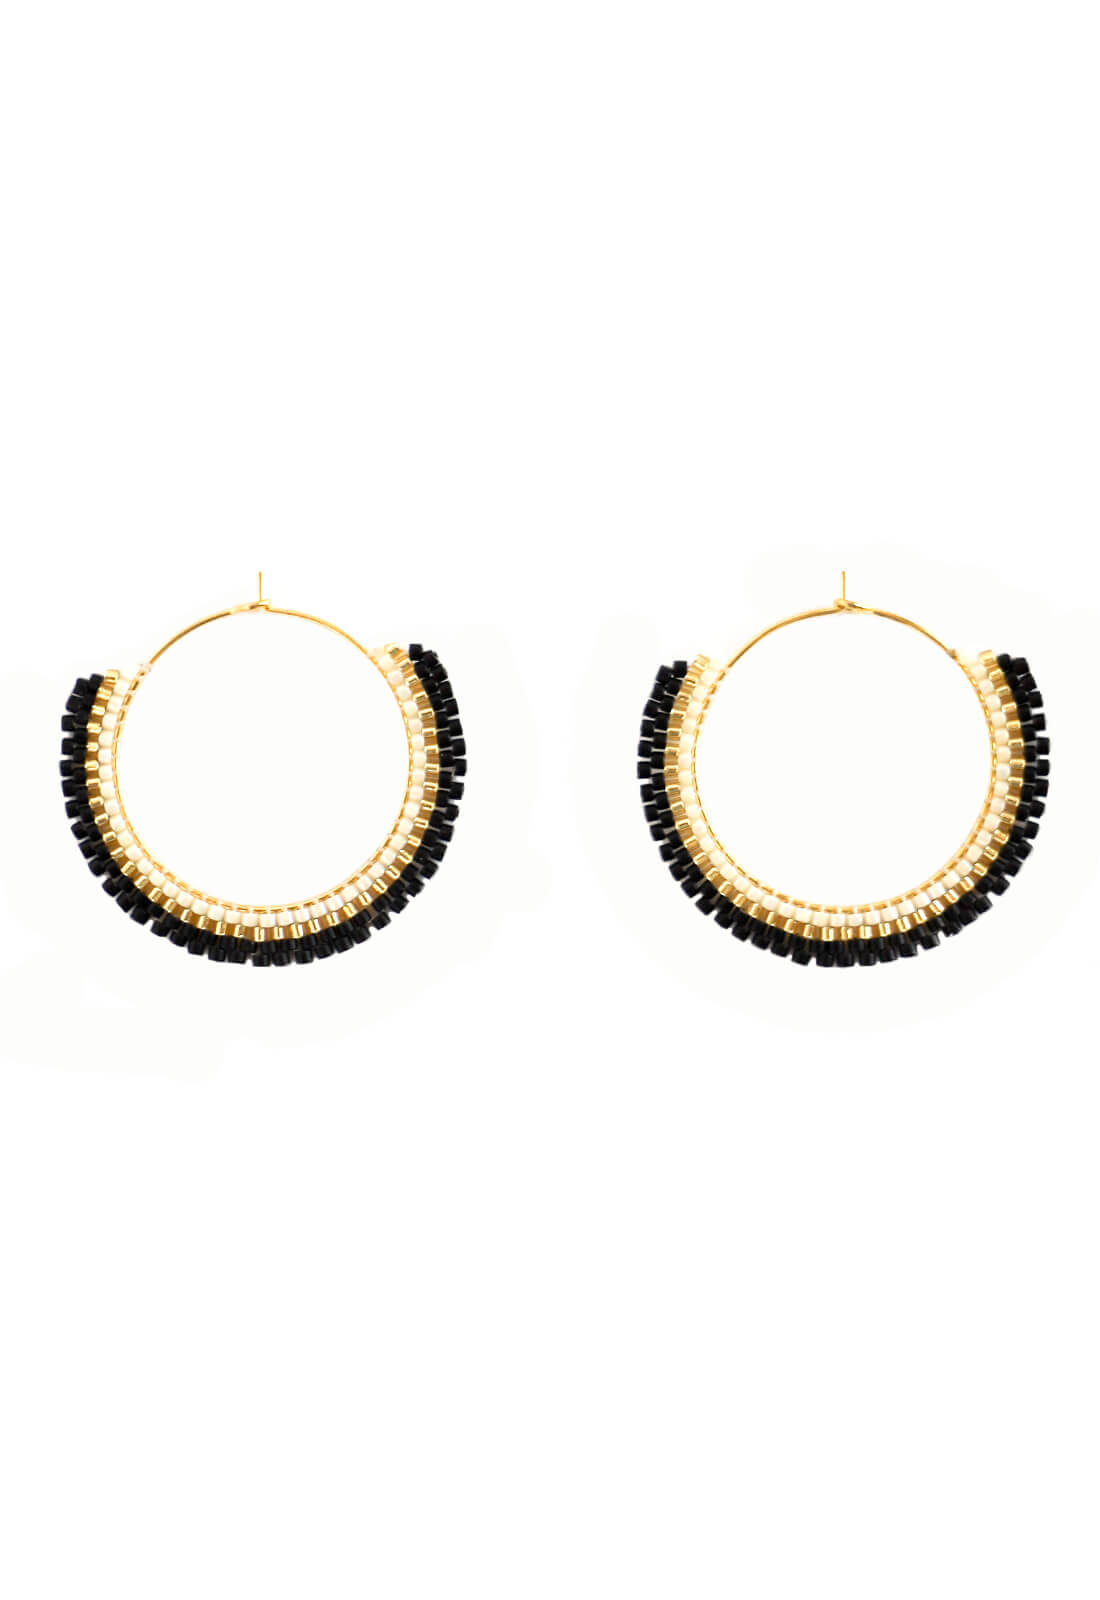 Beaded Hoop Earrings - Black and Gold